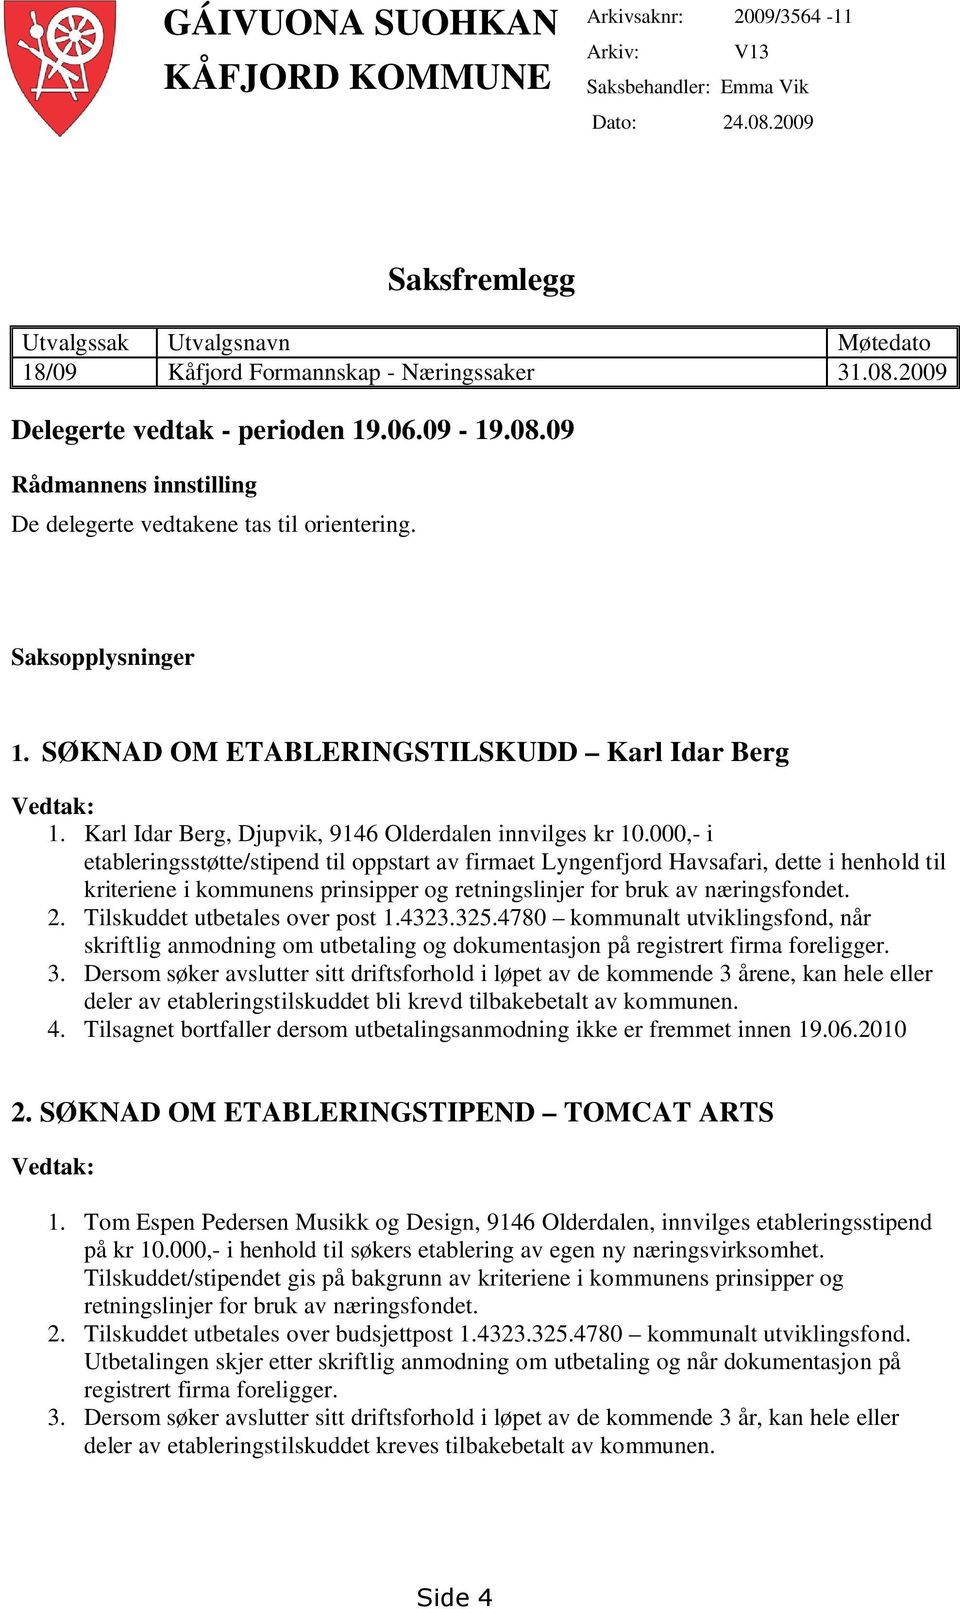 Karl Idar Berg, Djupvik, 9146 Olderdalen innvilges kr 10.